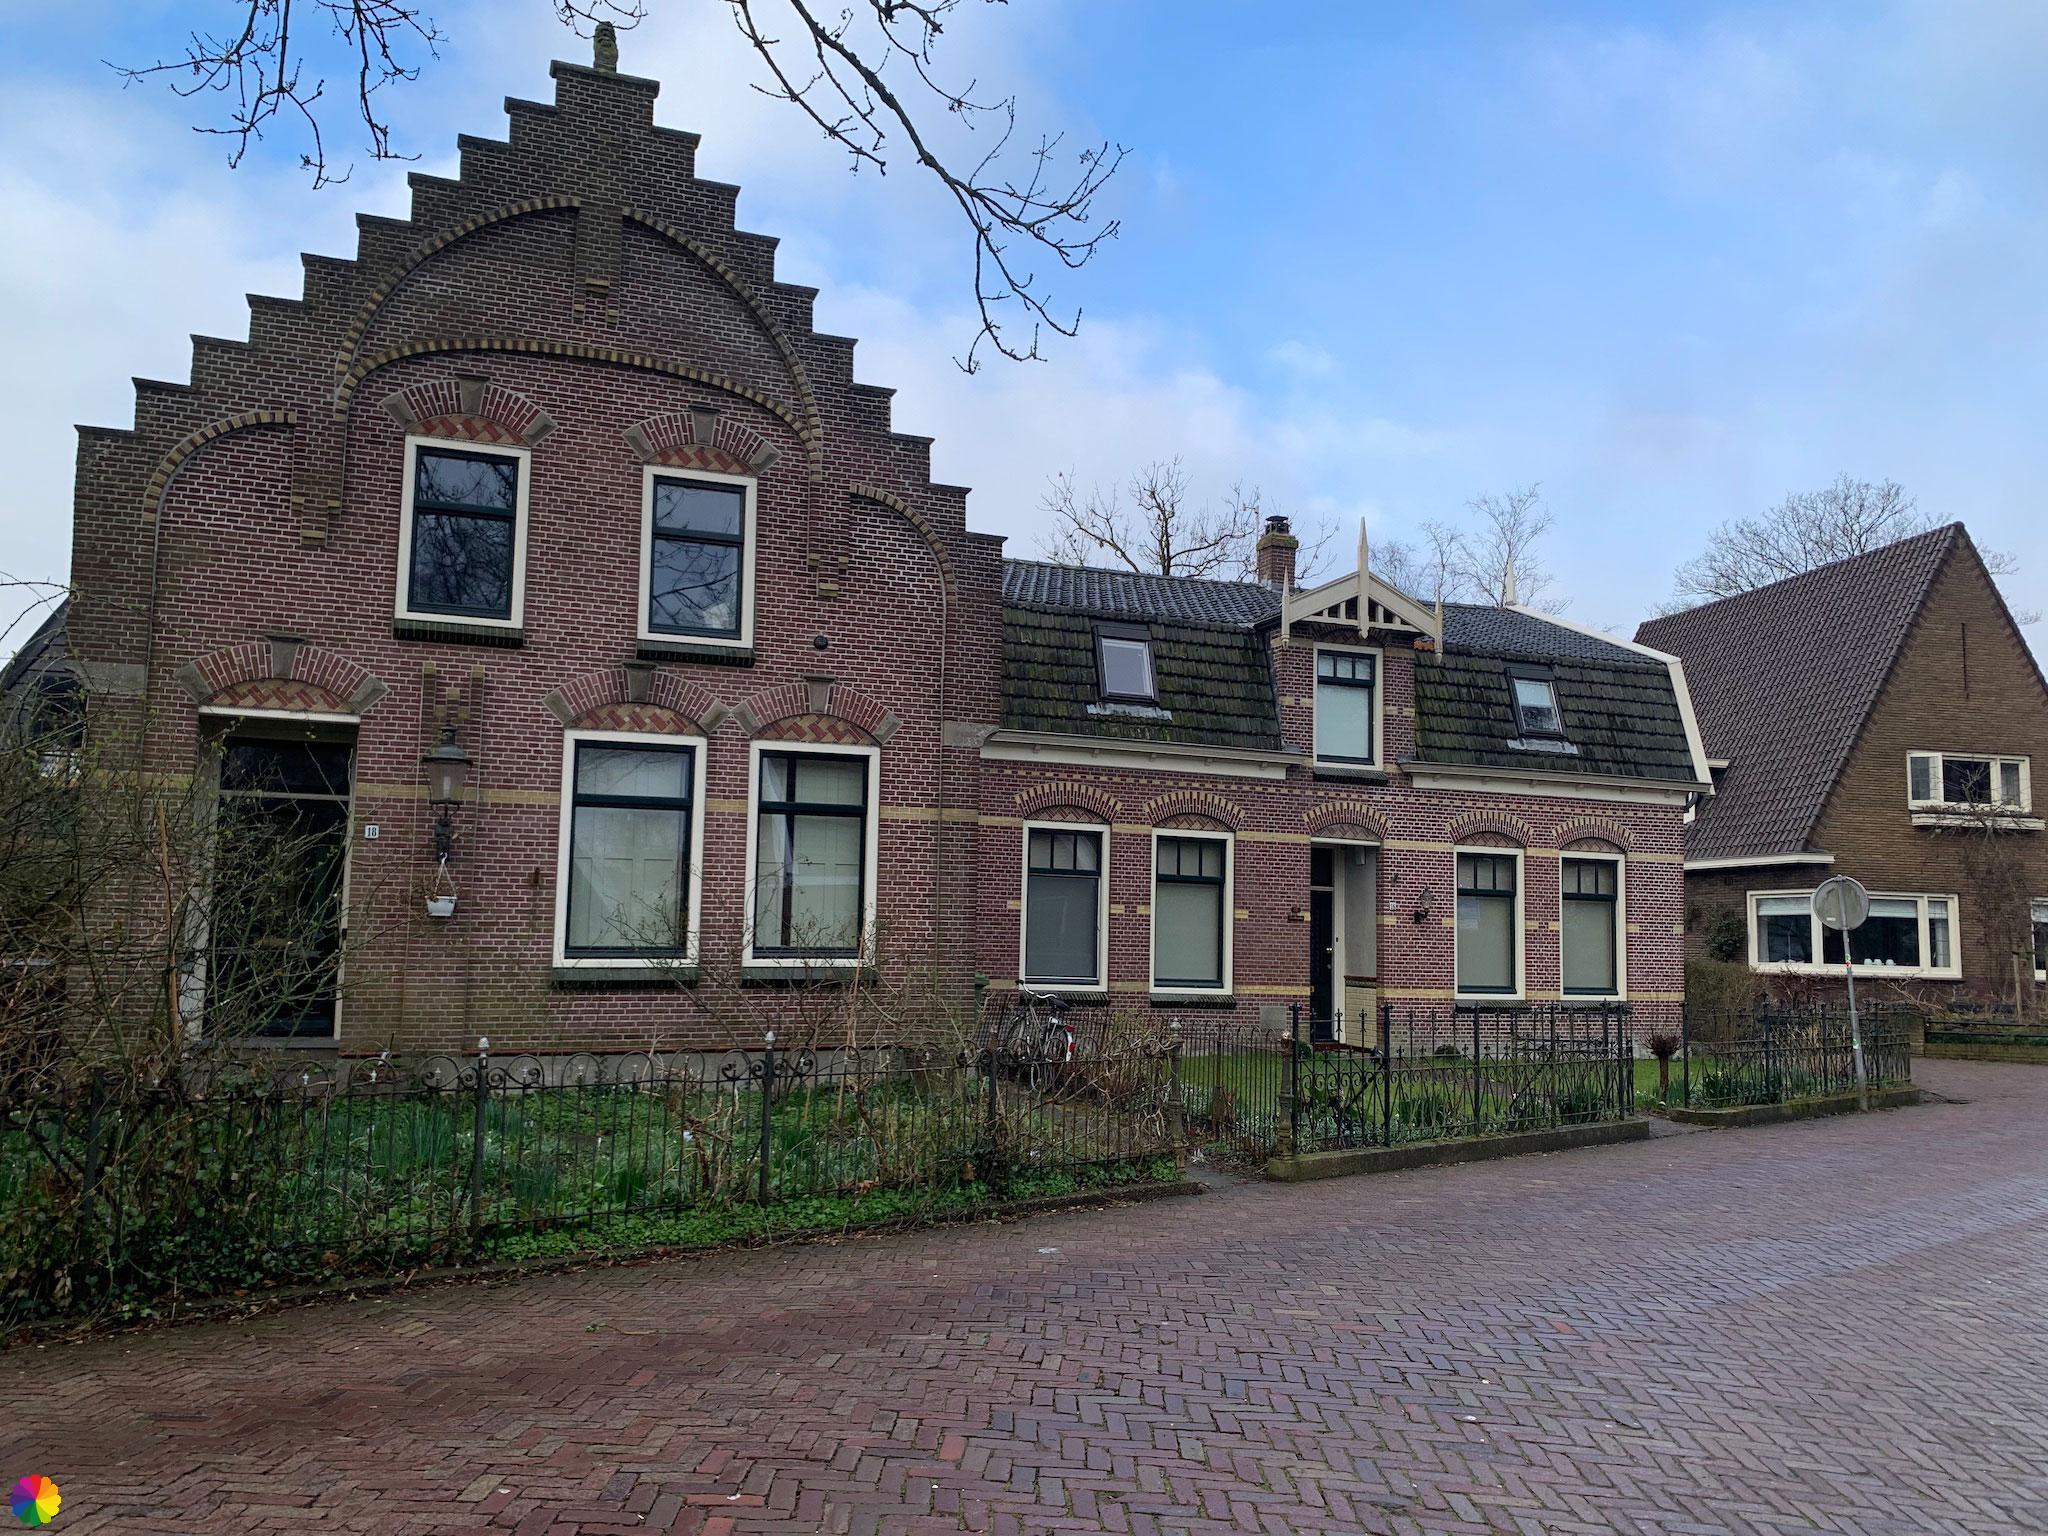 Huis met trapgevel in Broek in Waterland